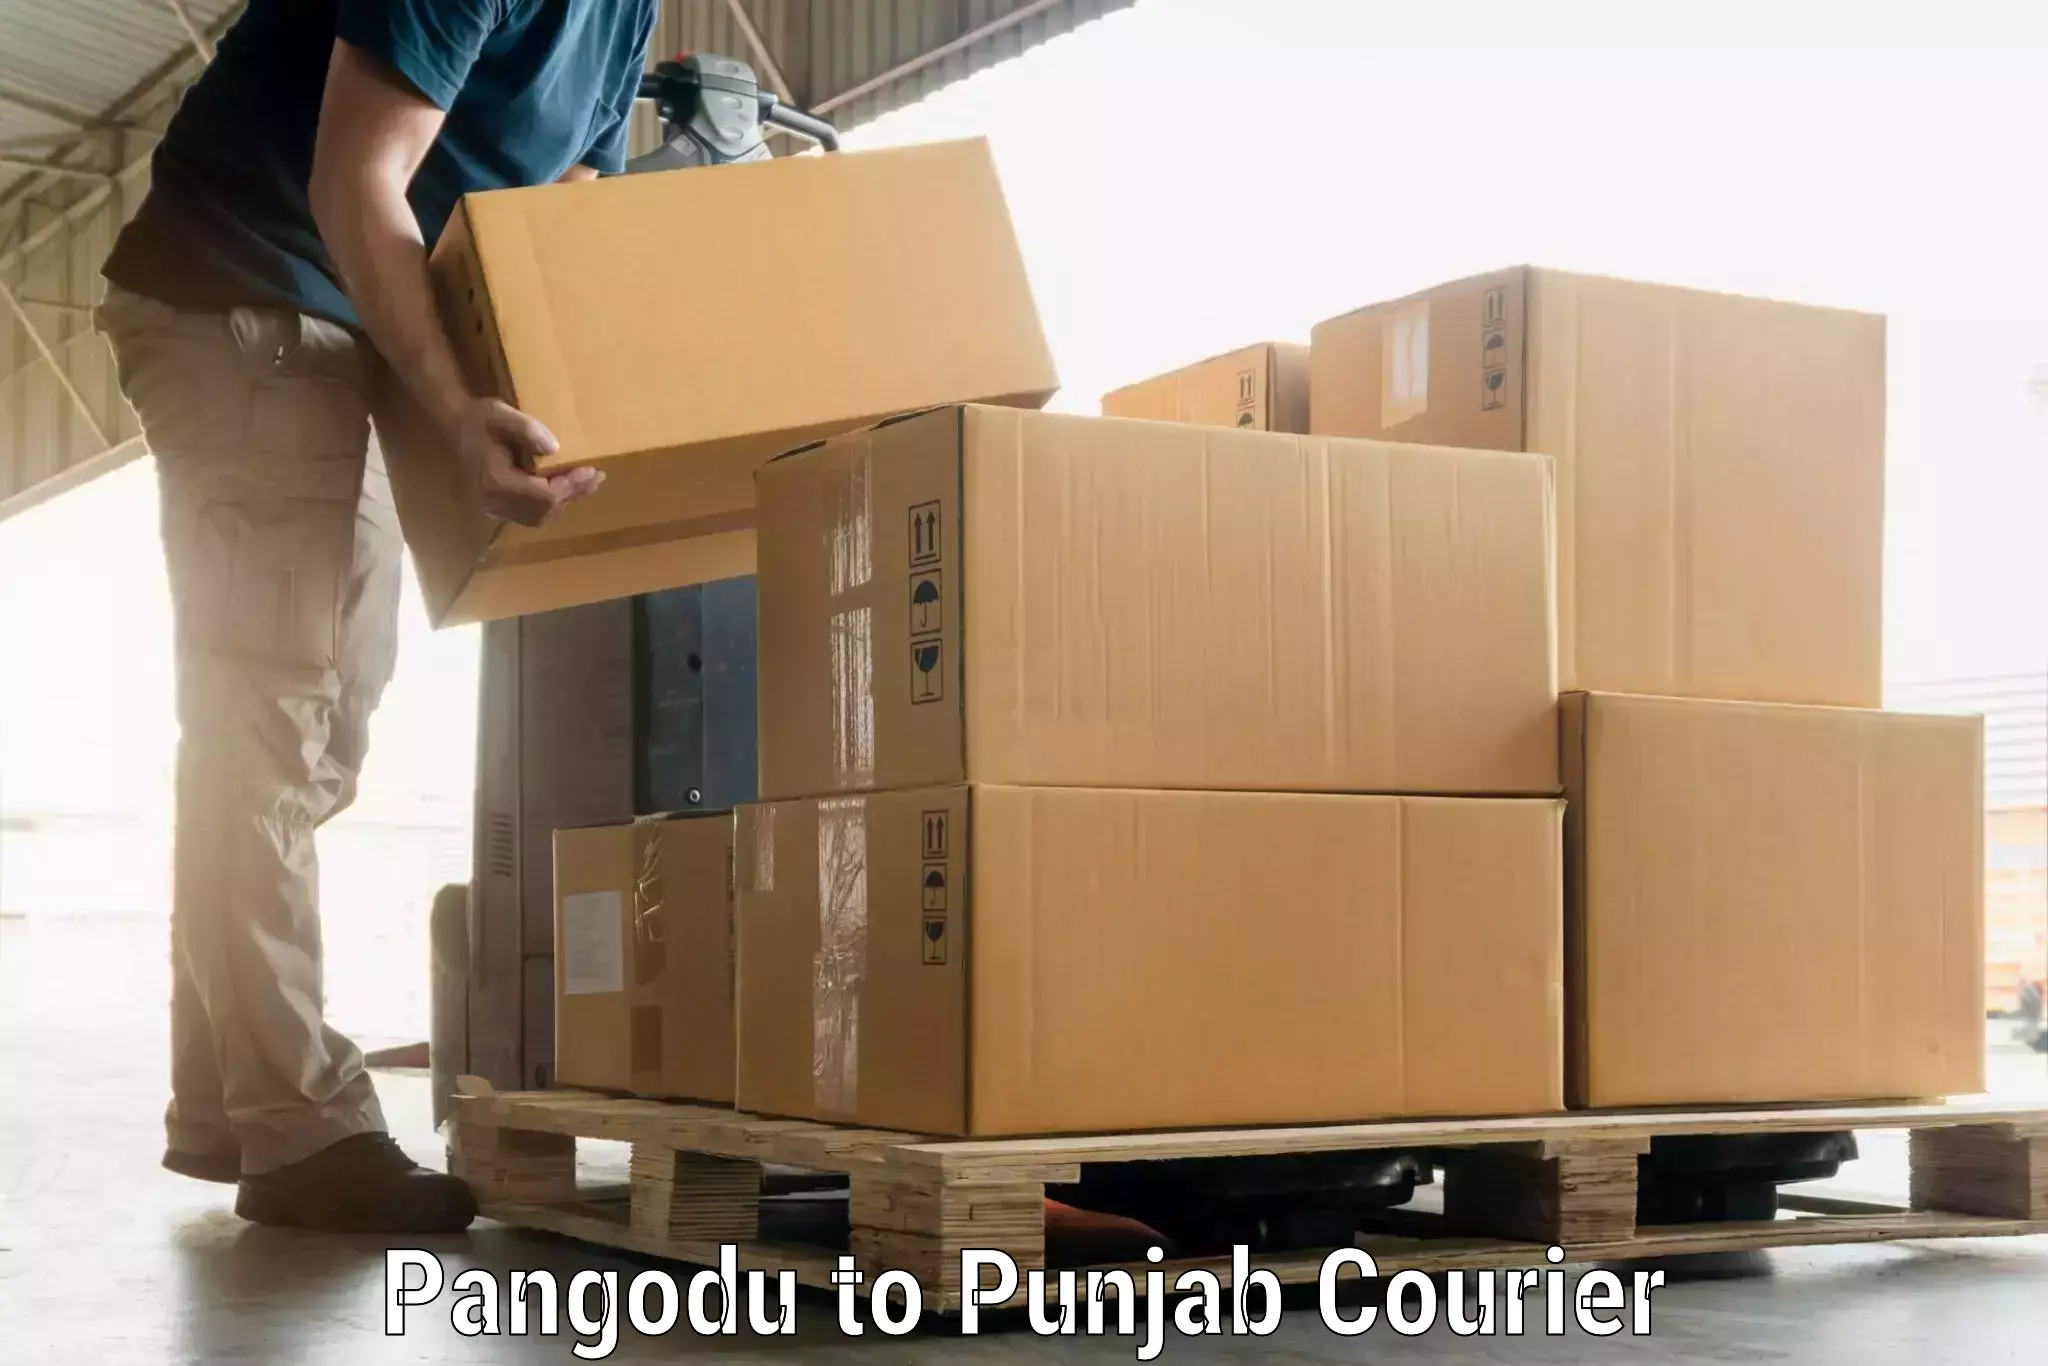 Luggage transport consultancy Pangodu to Punjab